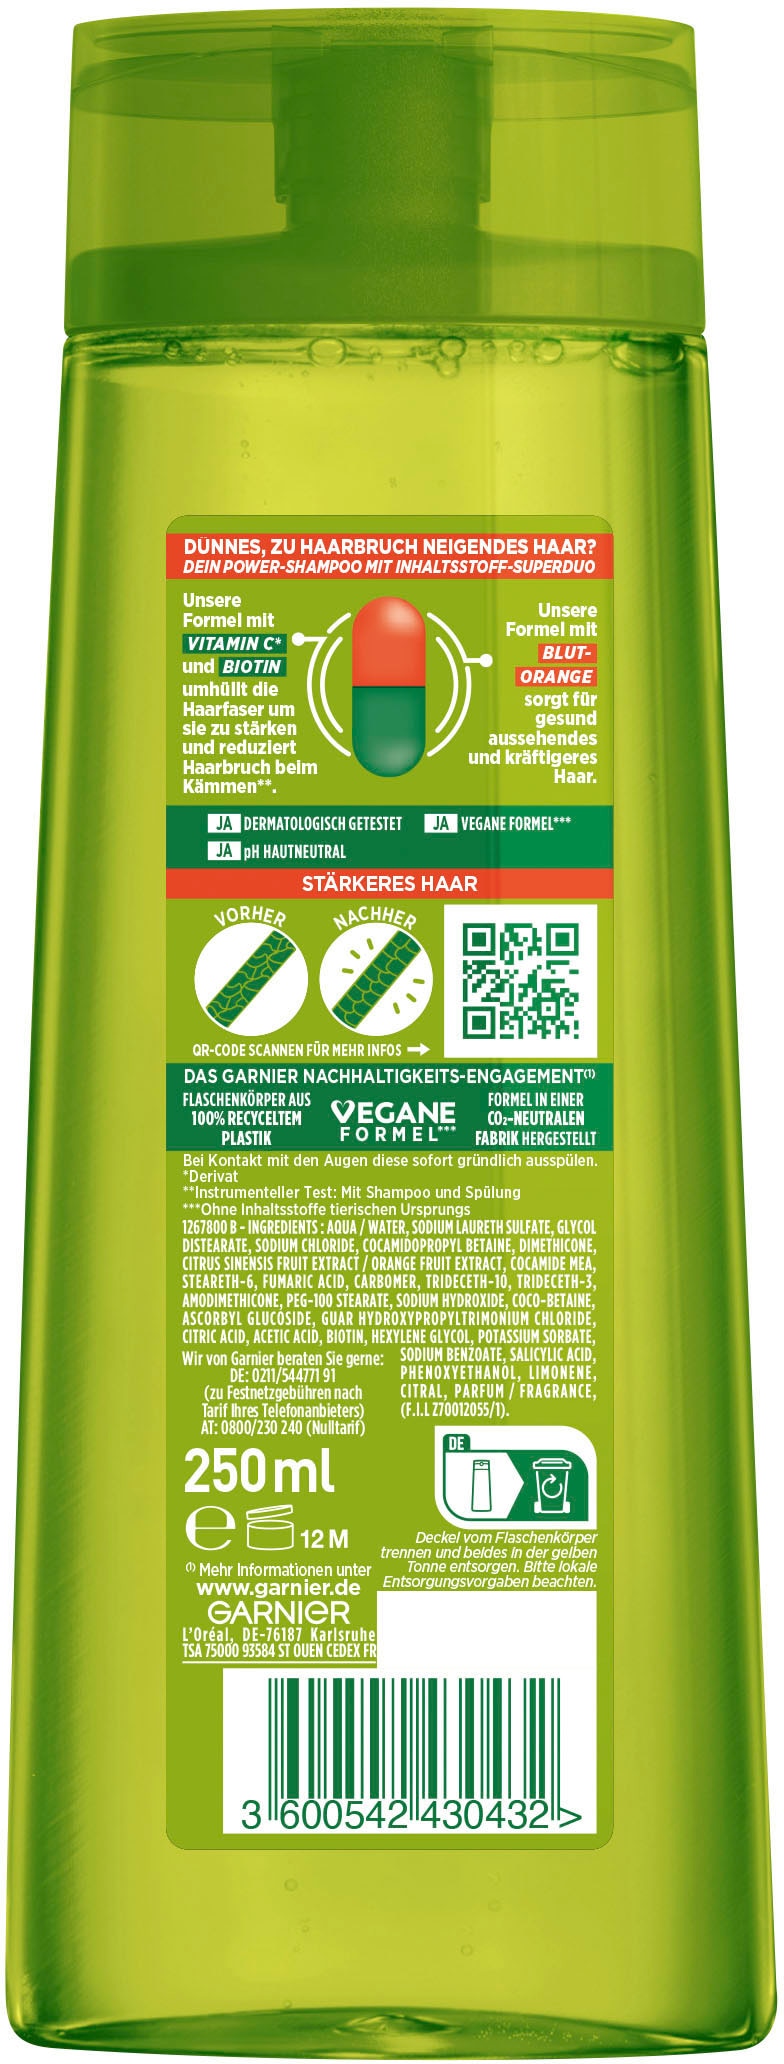 GARNIER Haarshampoo »Garnier Vitamine bei & online Shampoo« Kraft Fructis UNIVERSAL